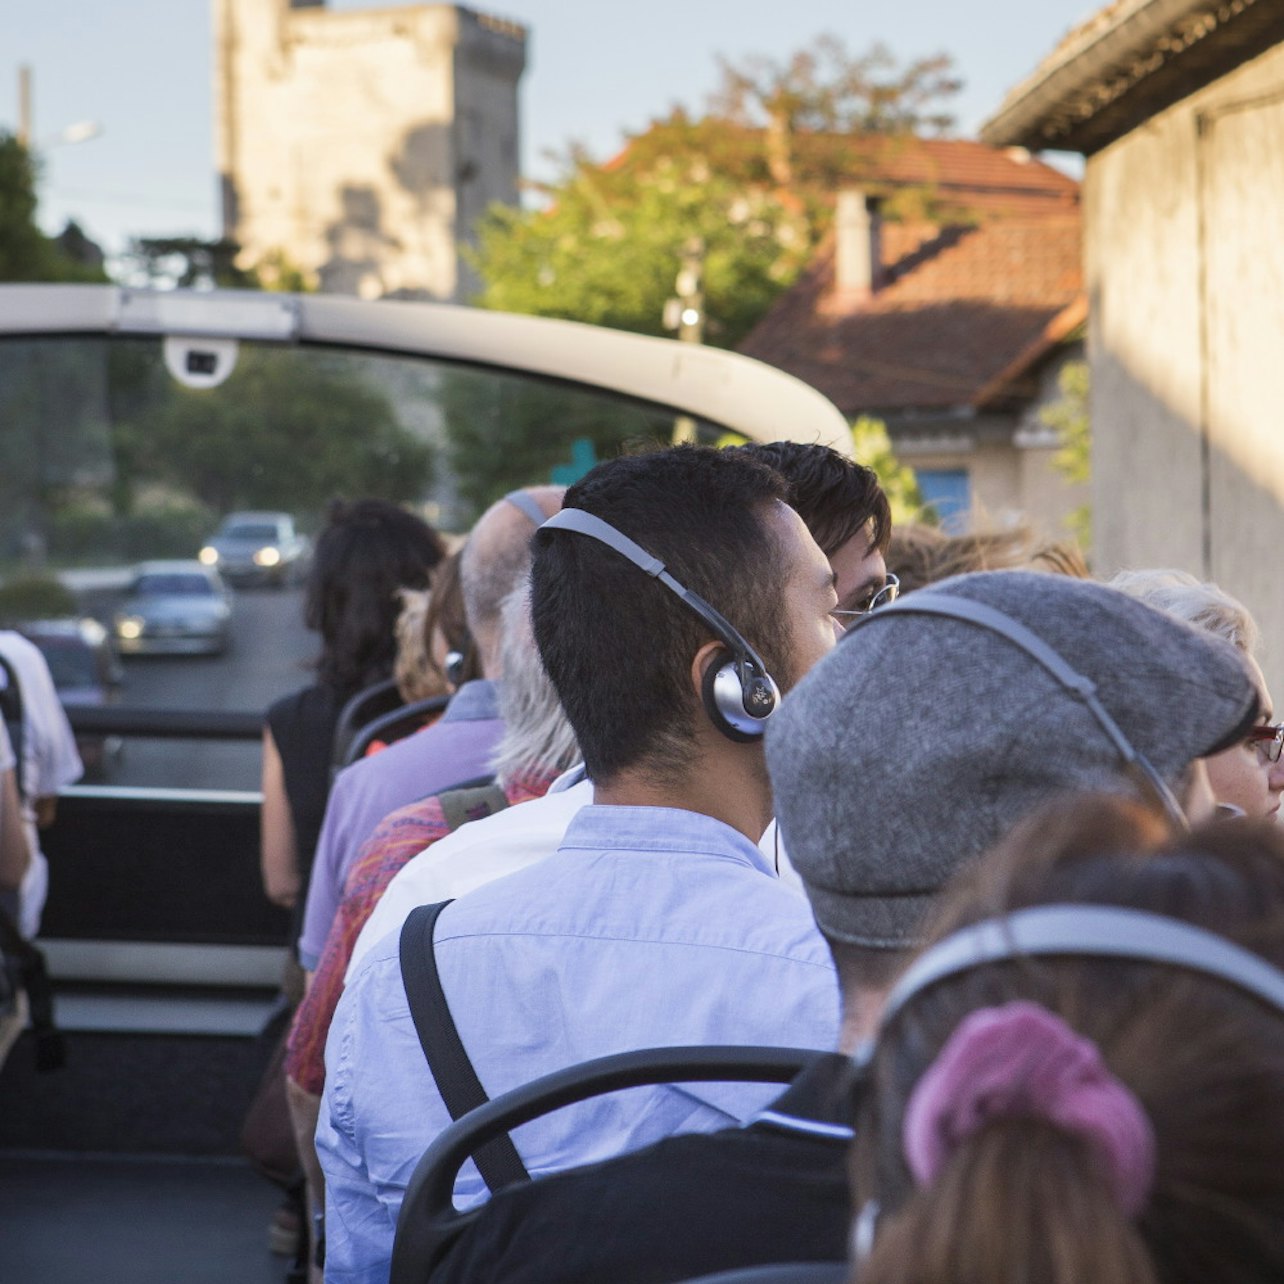 Autocarro hop-on hop-off Avignon - Acomodações em Avignon